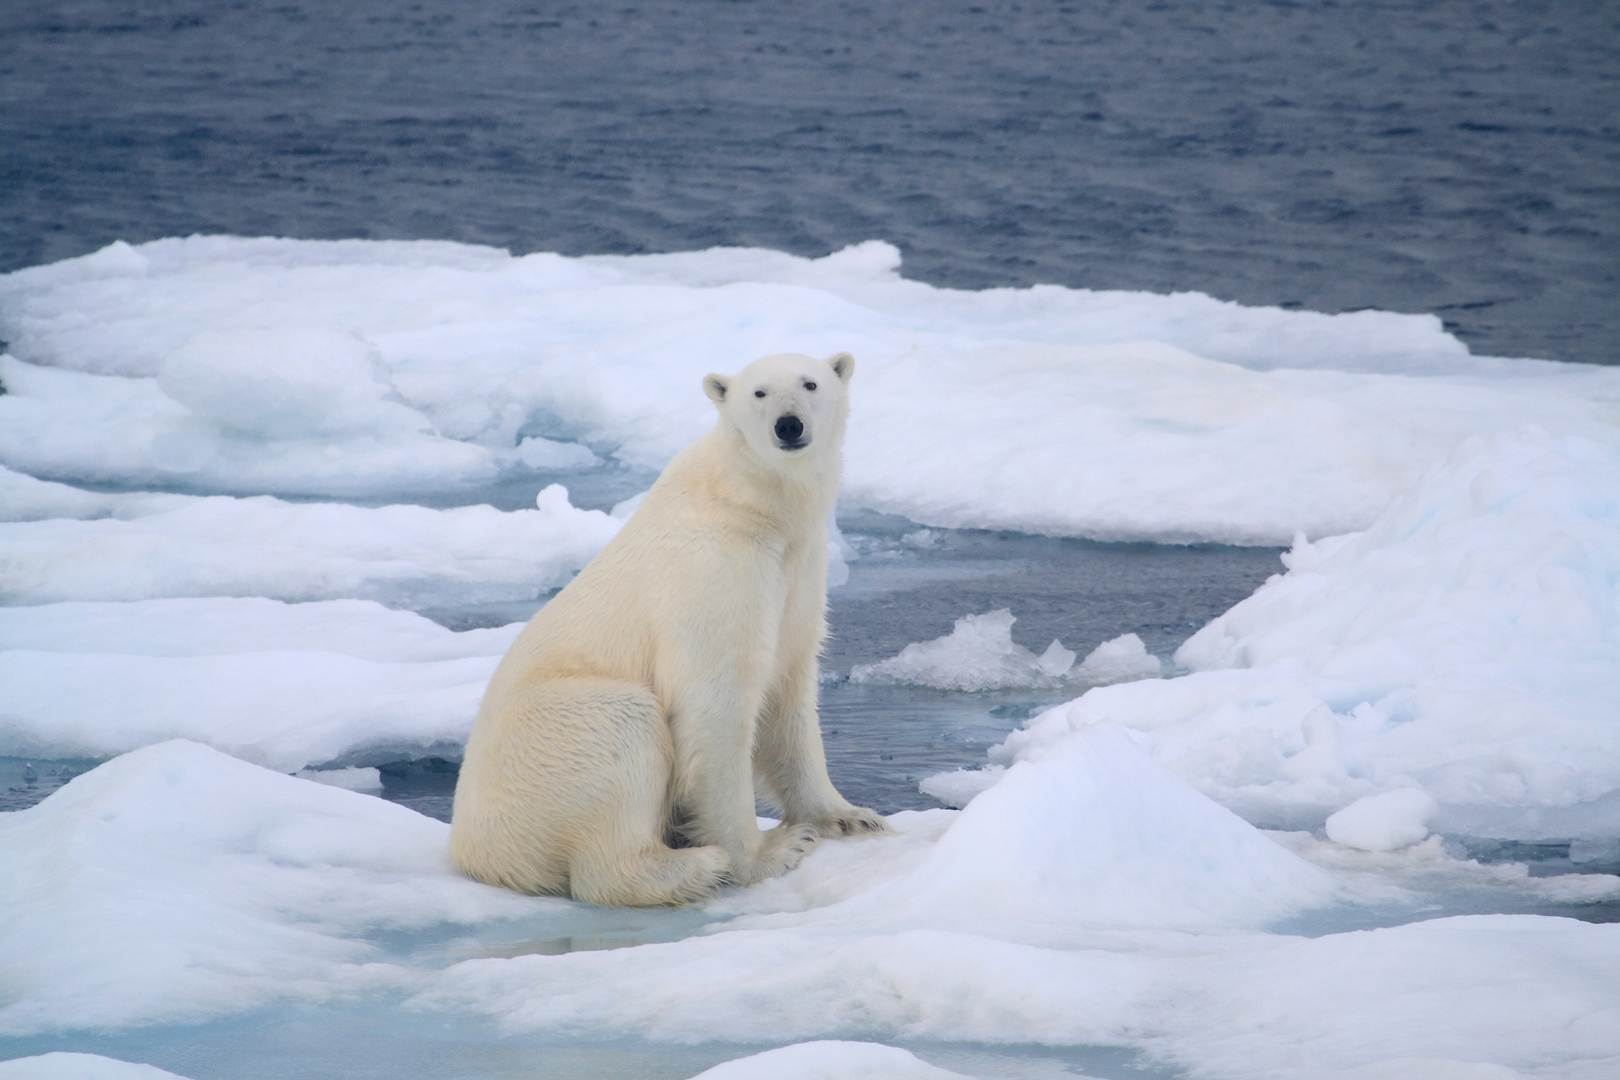 القطب الشمالي أم الجنوبي: أيهما الأكثر برودة؟